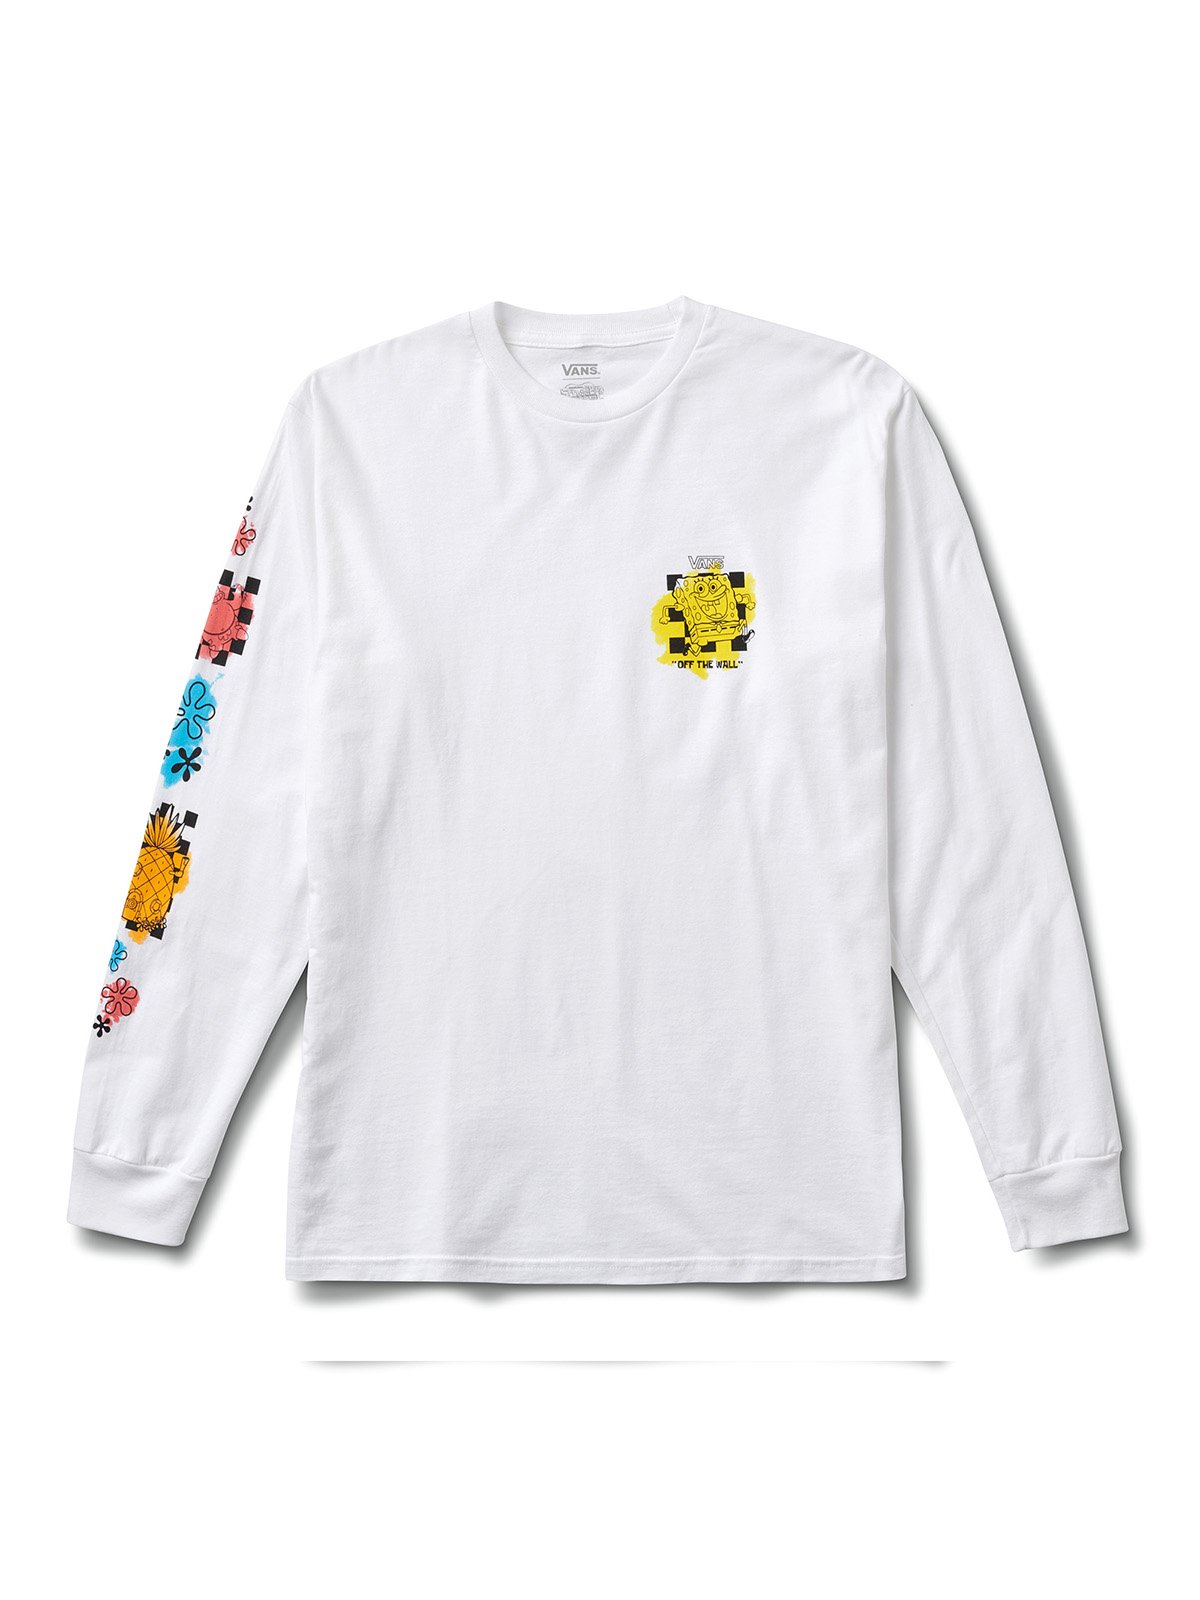 SpongeBob SquarePants supreme louis vuitton Shirt – Full Printed Apparel